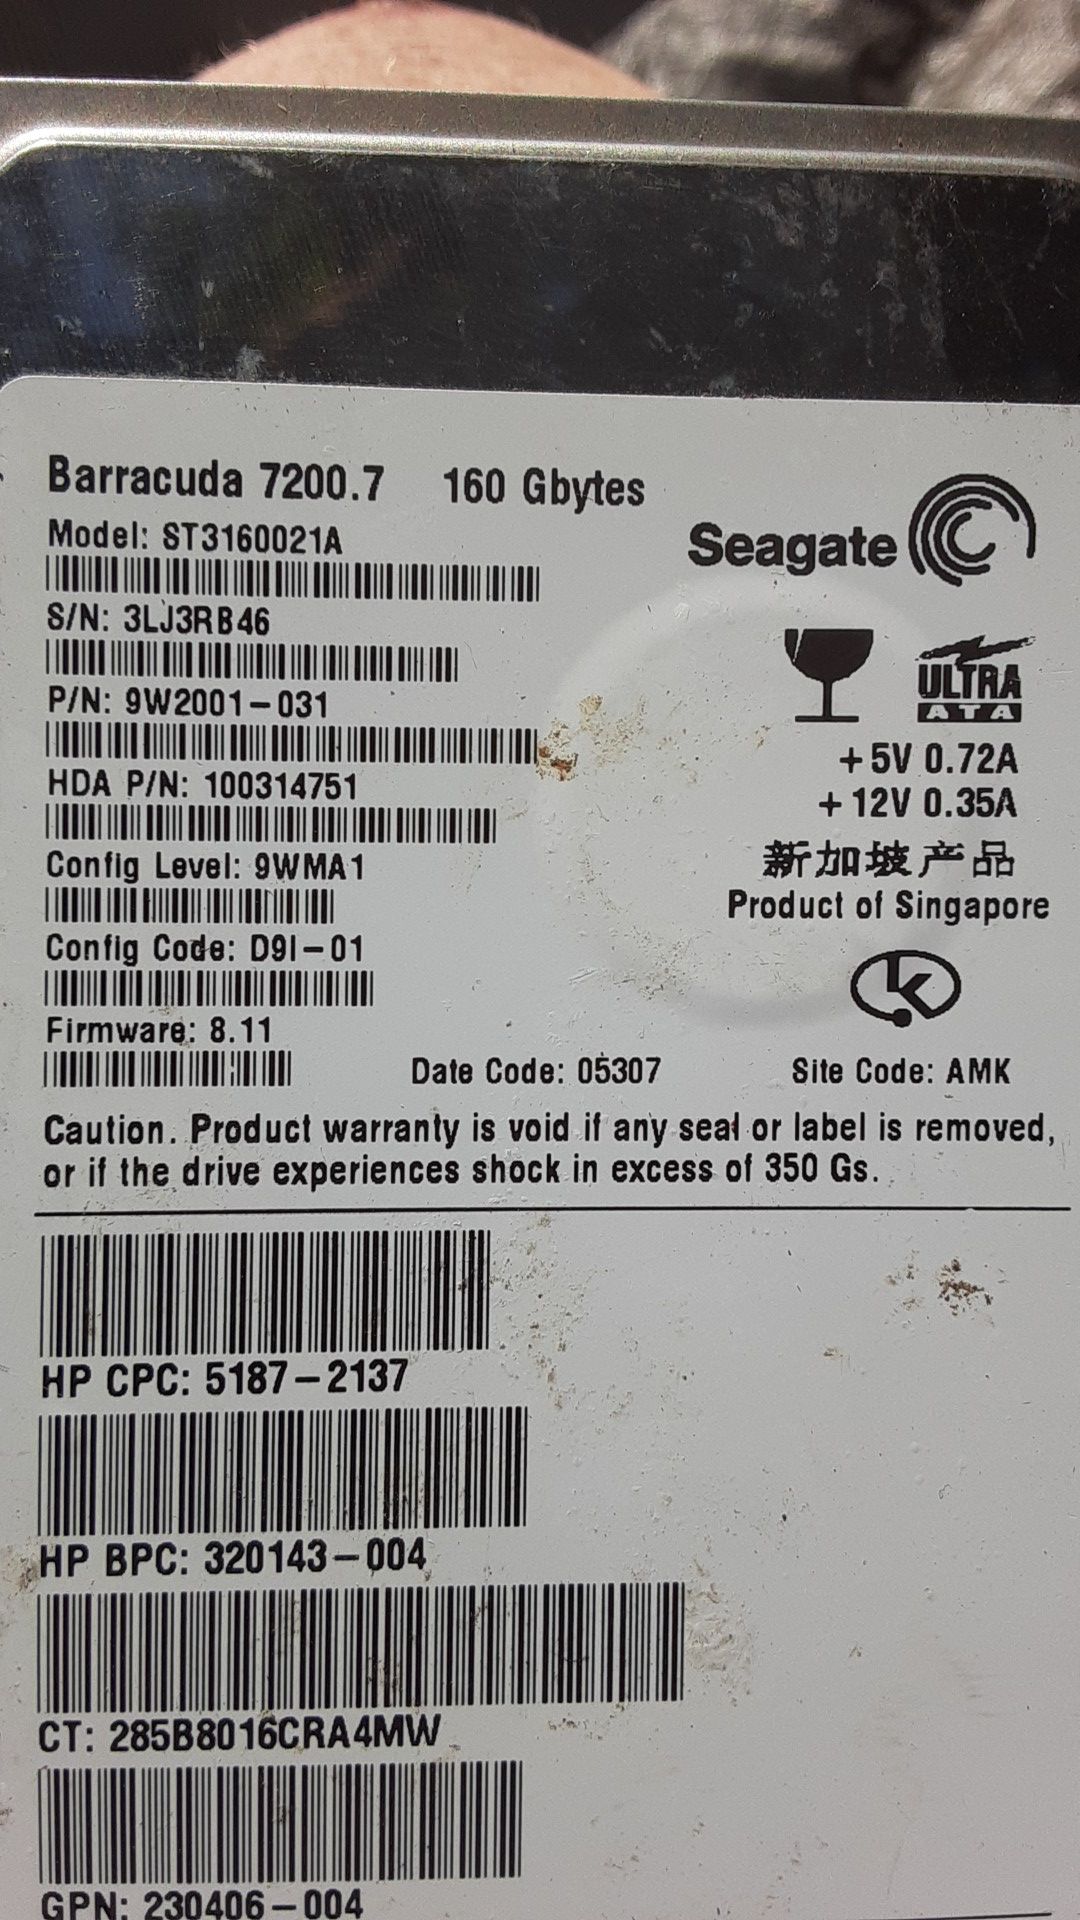 Seagate Barracuda 7200.7 160 gbytes